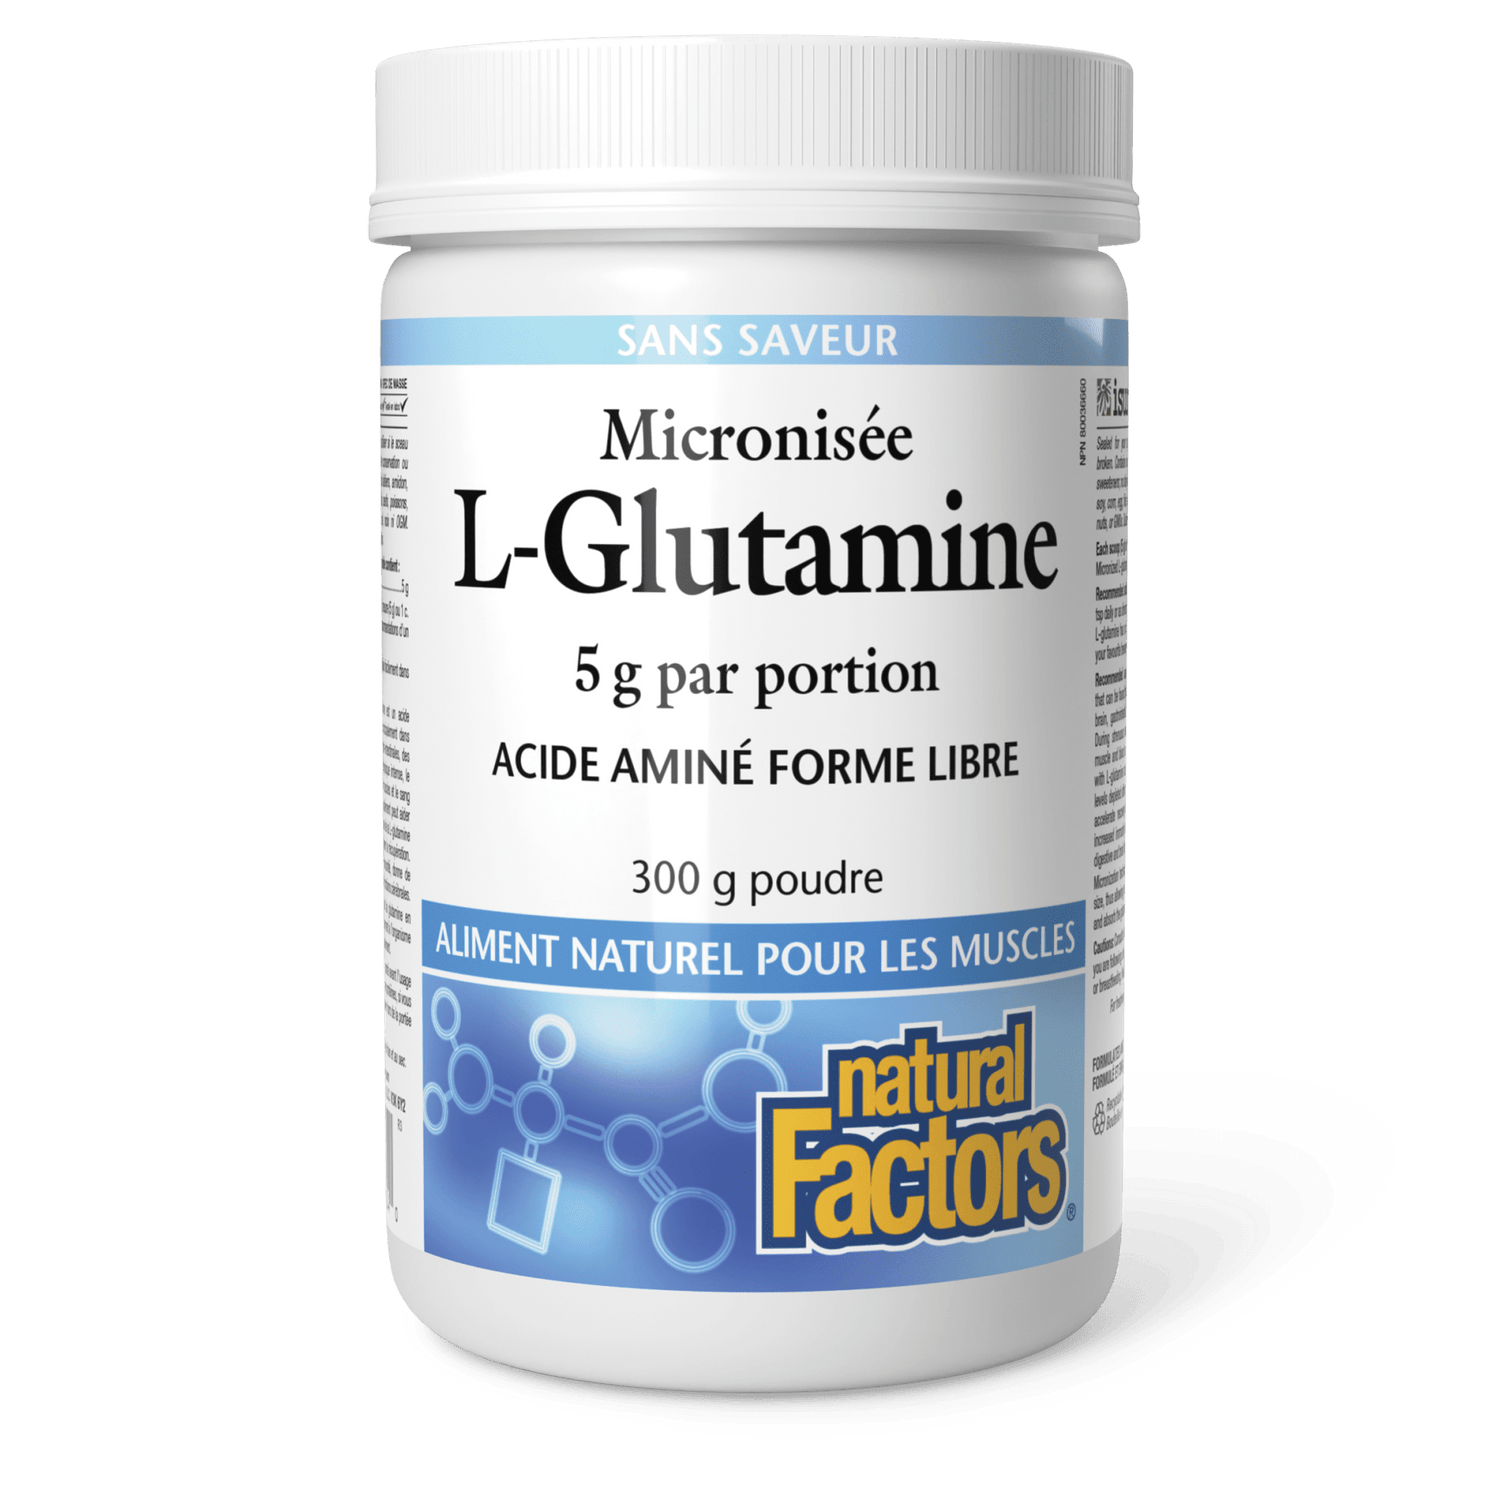 L-Glutamine micronisée 5 g, Natural Factors|v|image|2804